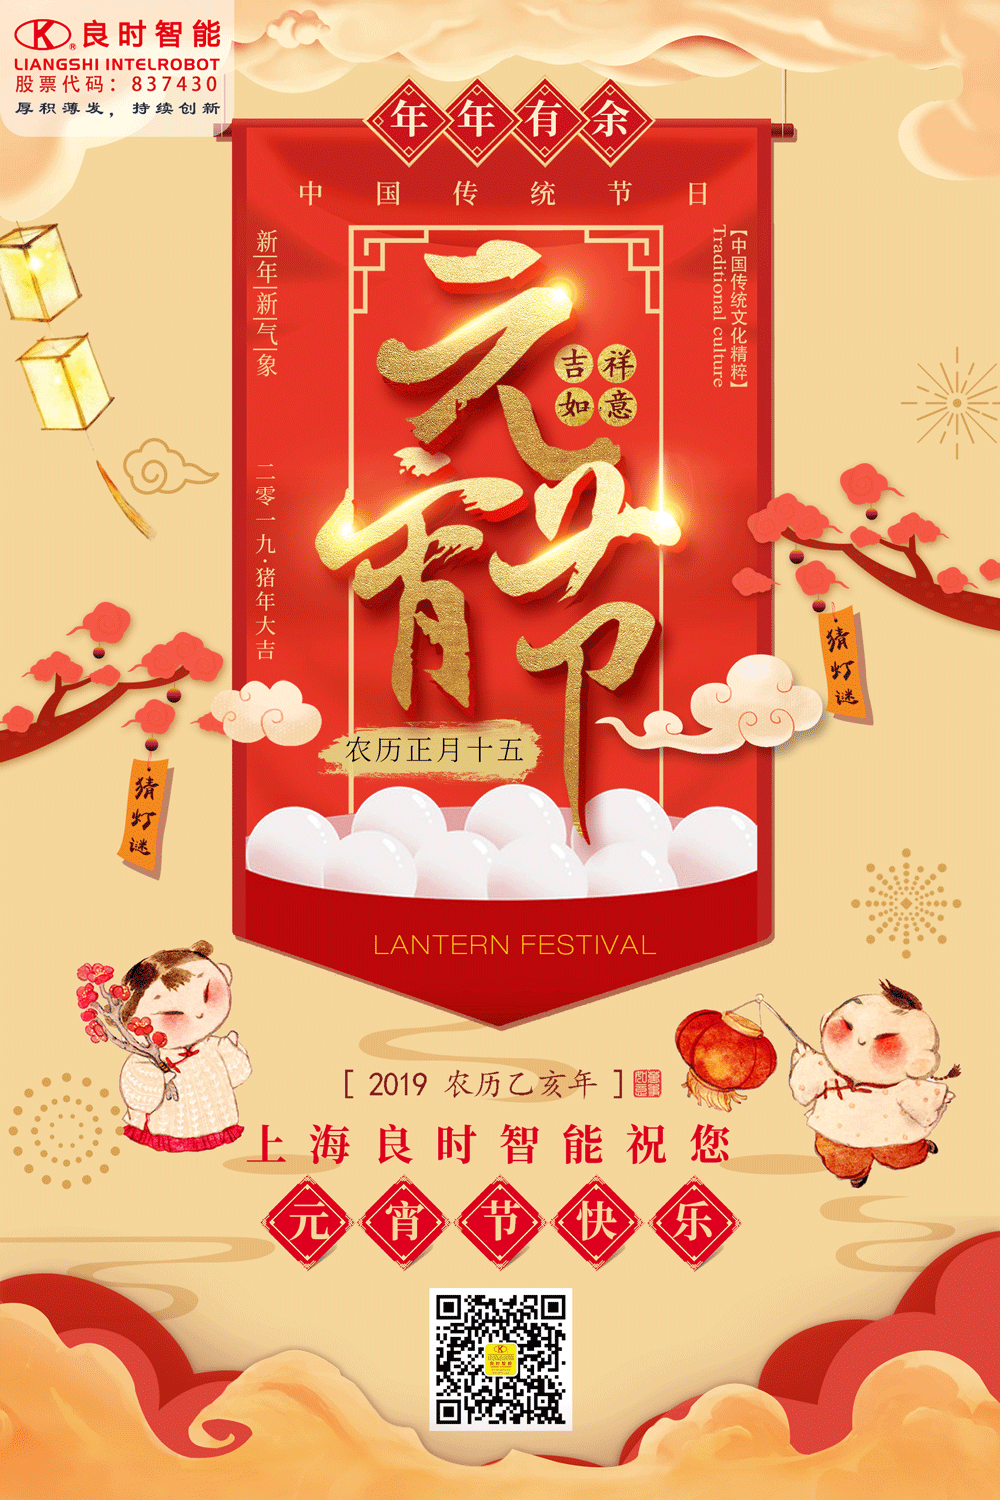 元宵节丨灯火阑珊处，上海良时祝大家元宵节快乐！